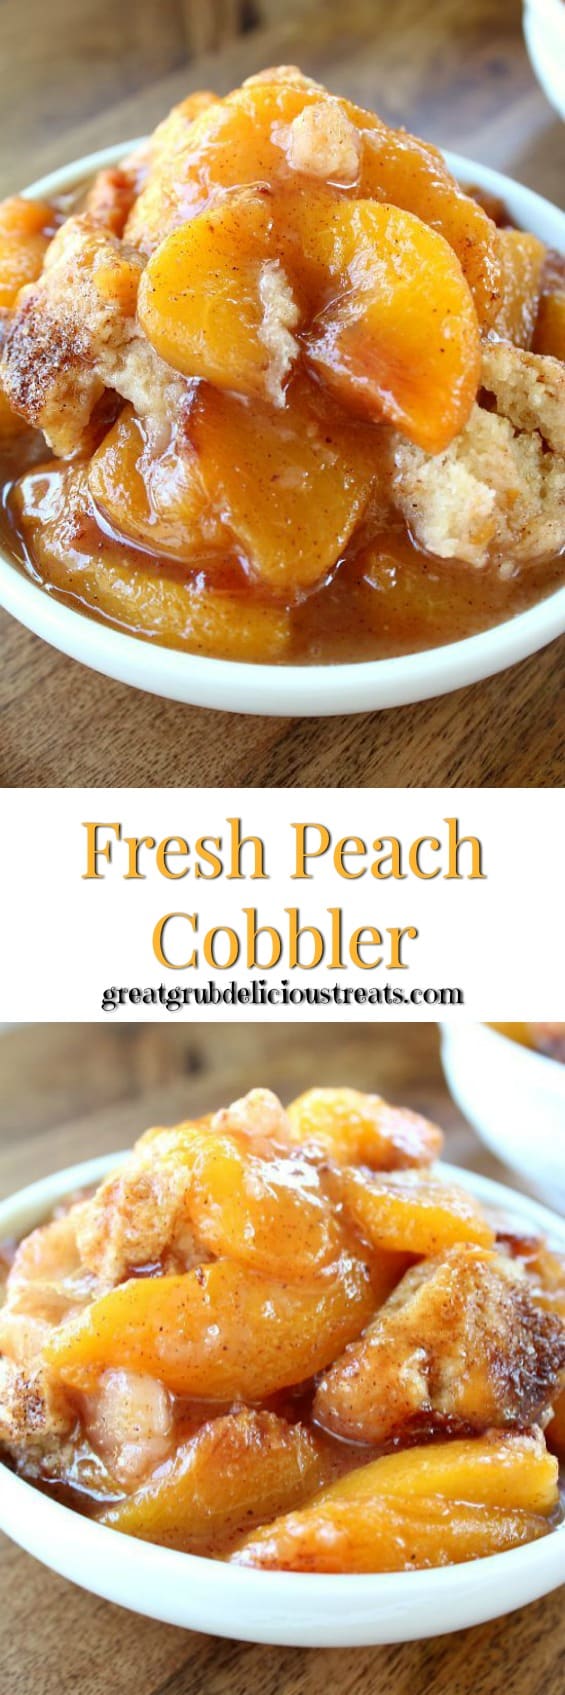 Fresh Peach Cobbler